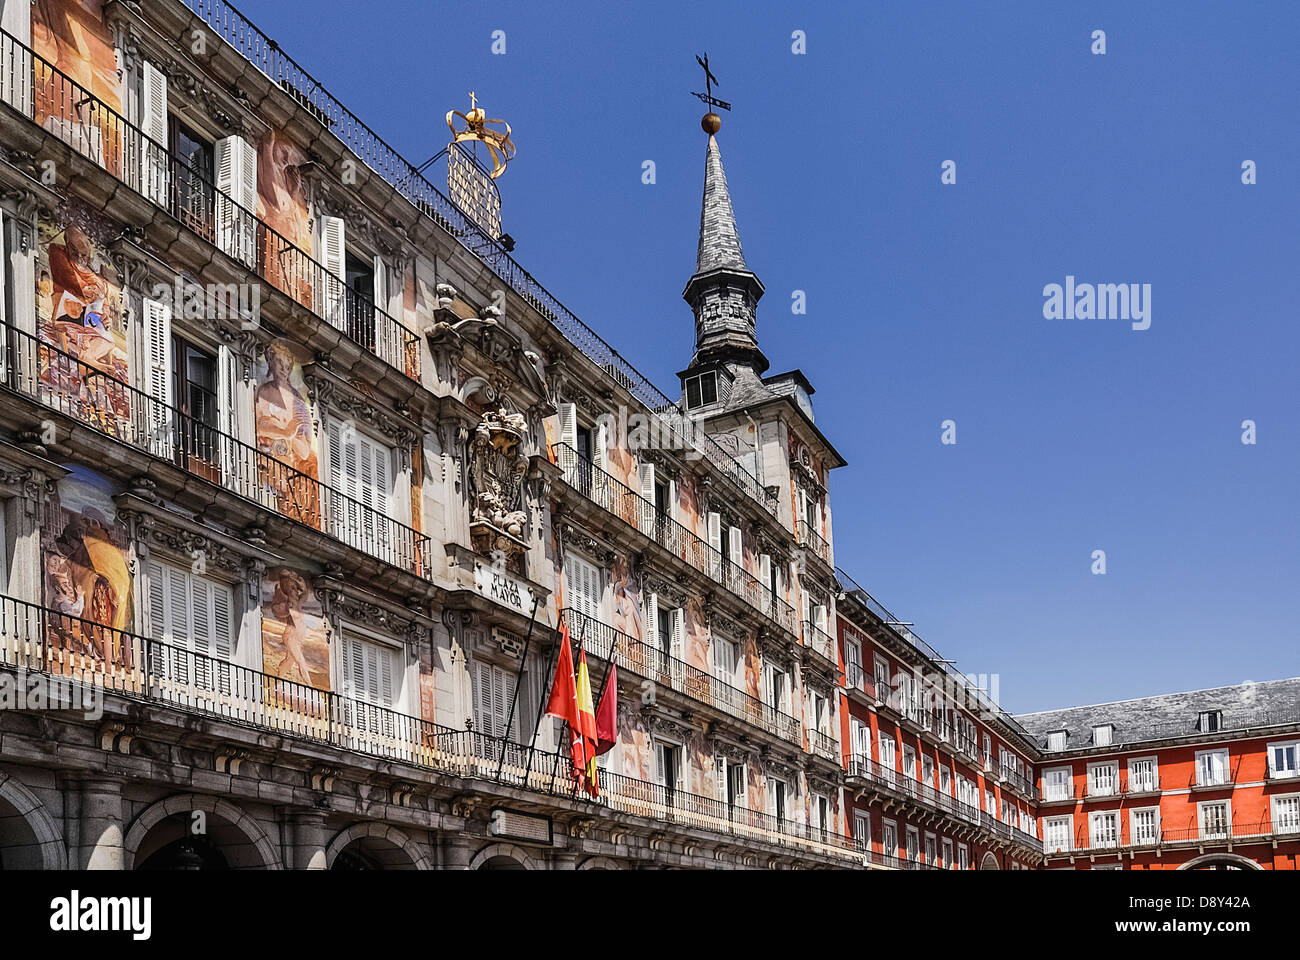 Espagne, Madrid, Plaza Mayor murales colorées sur la Casa de la Panaderia. Banque D'Images